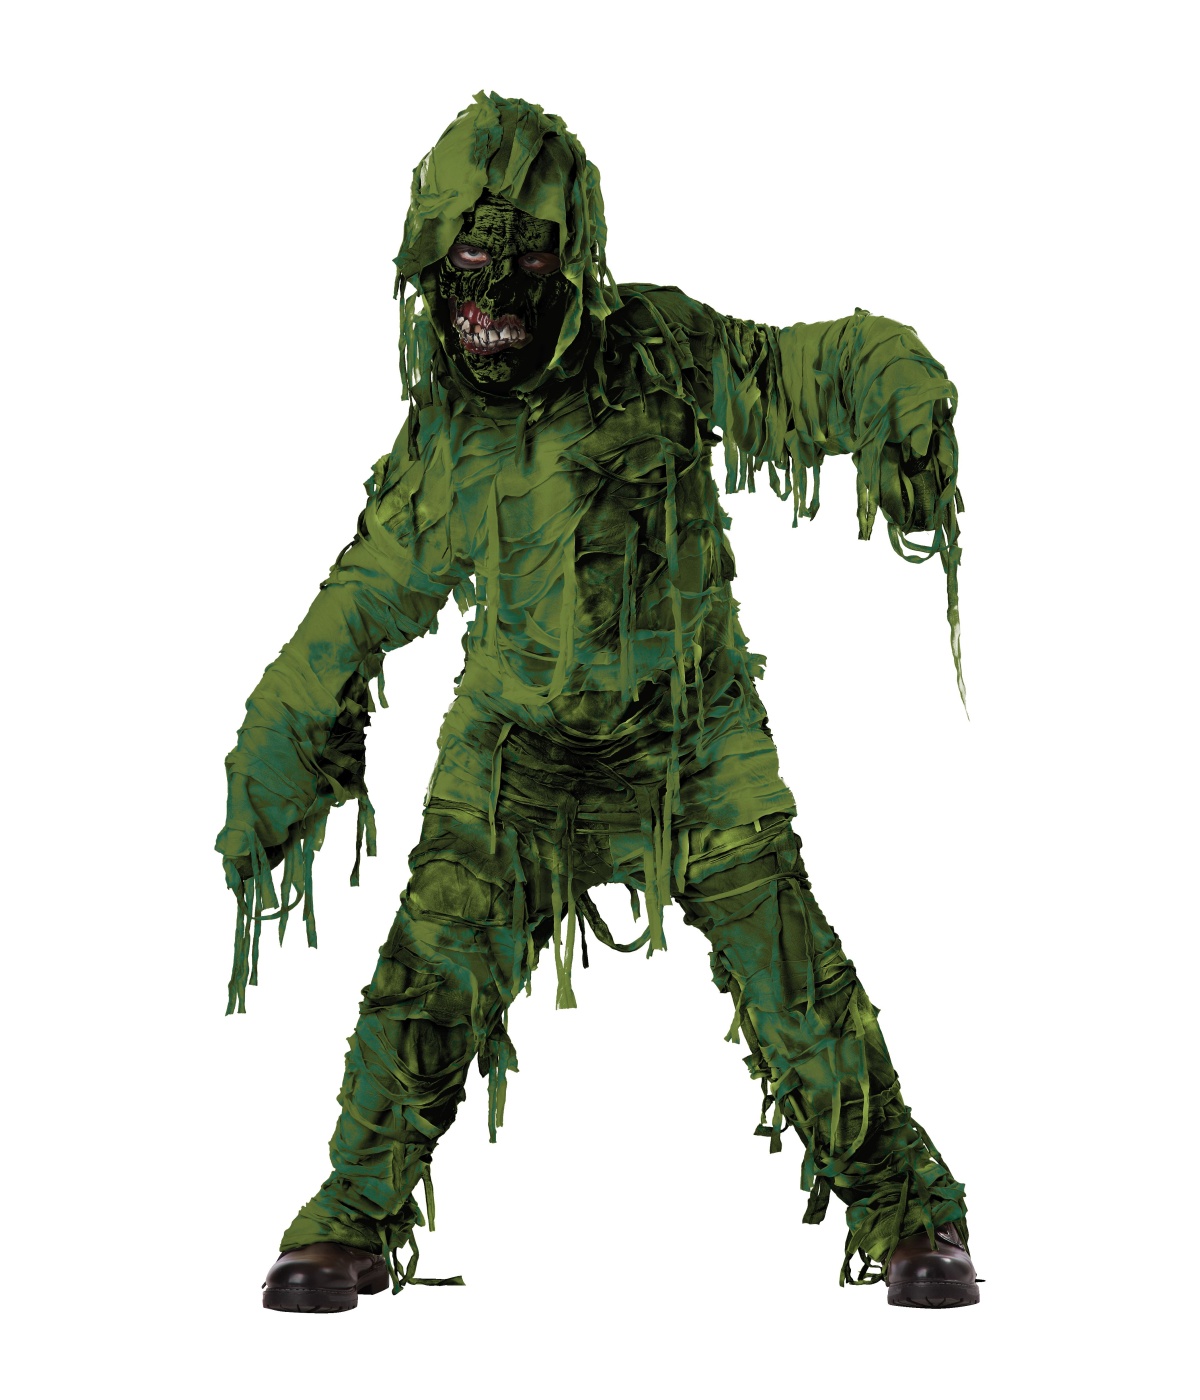  Boys Green Swamp Monster Costume